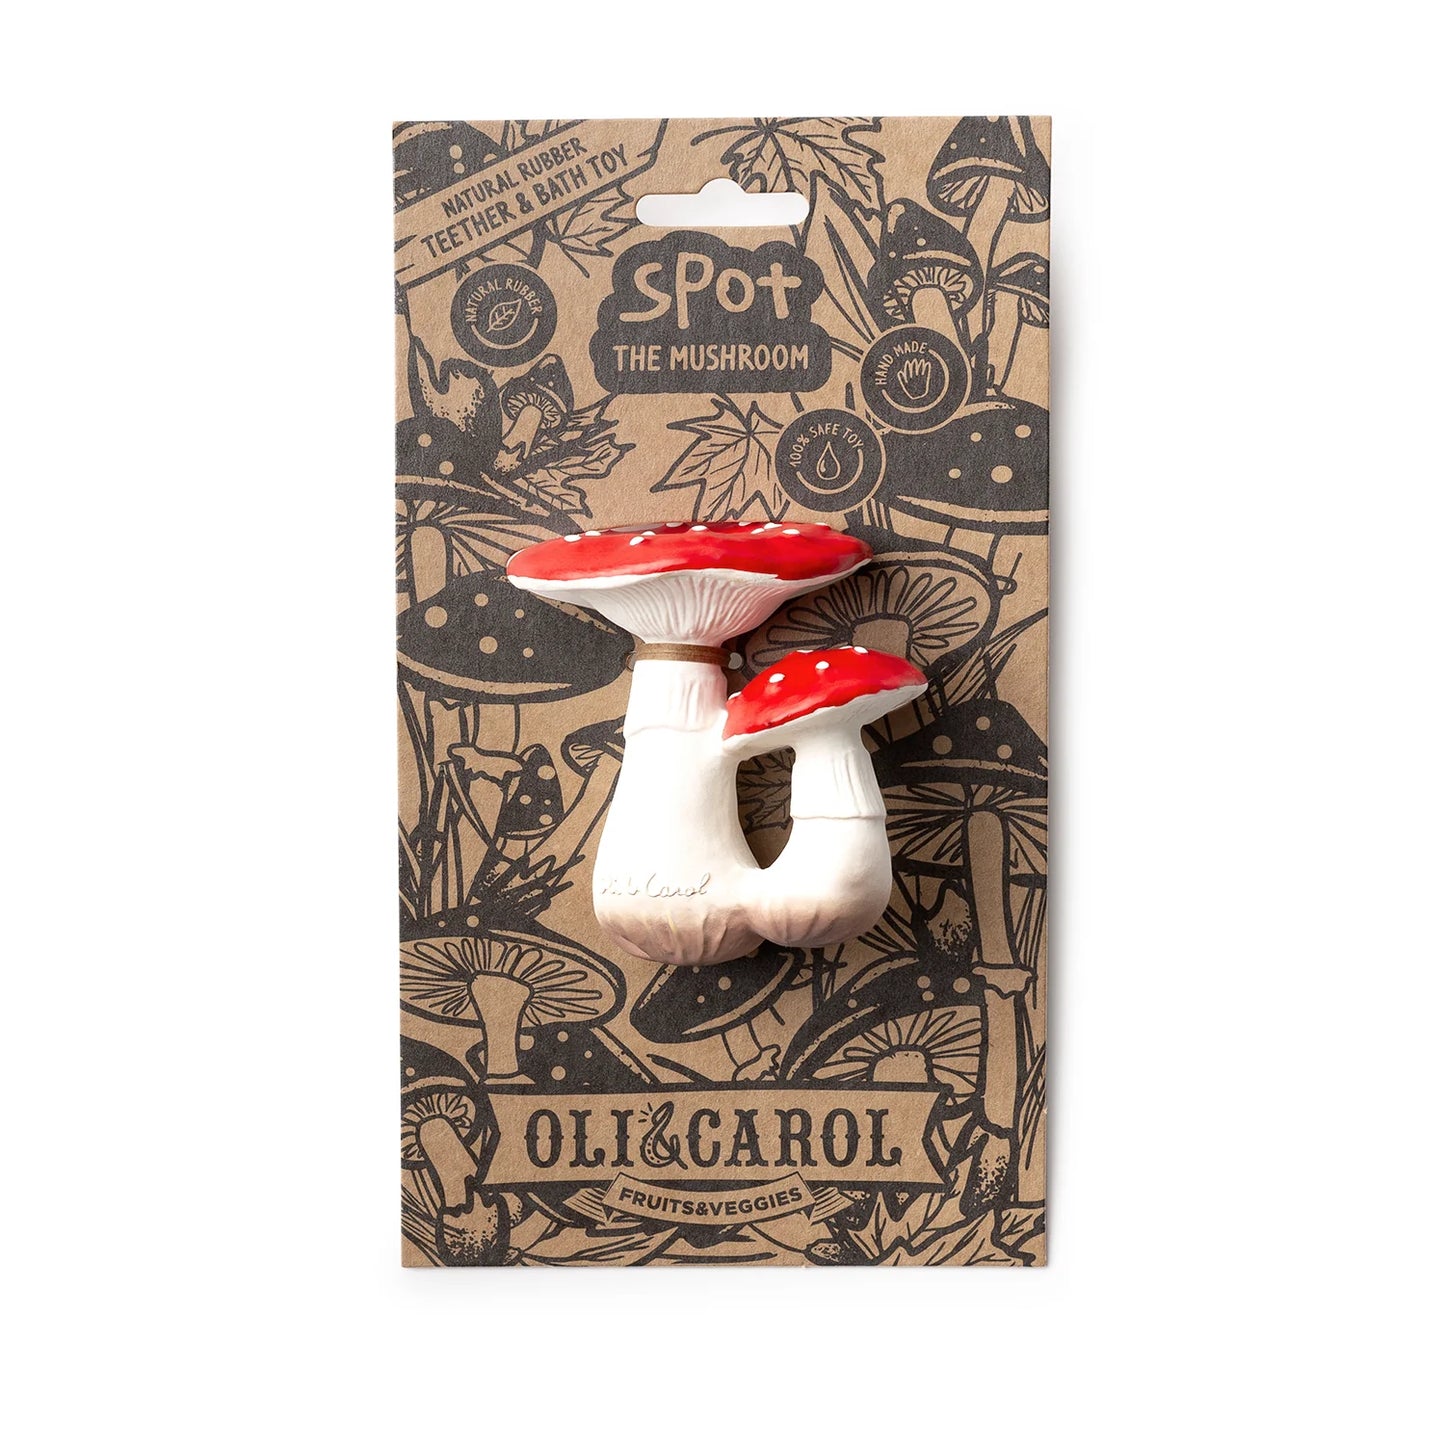 Spot Mushroom baby toy in packaging.